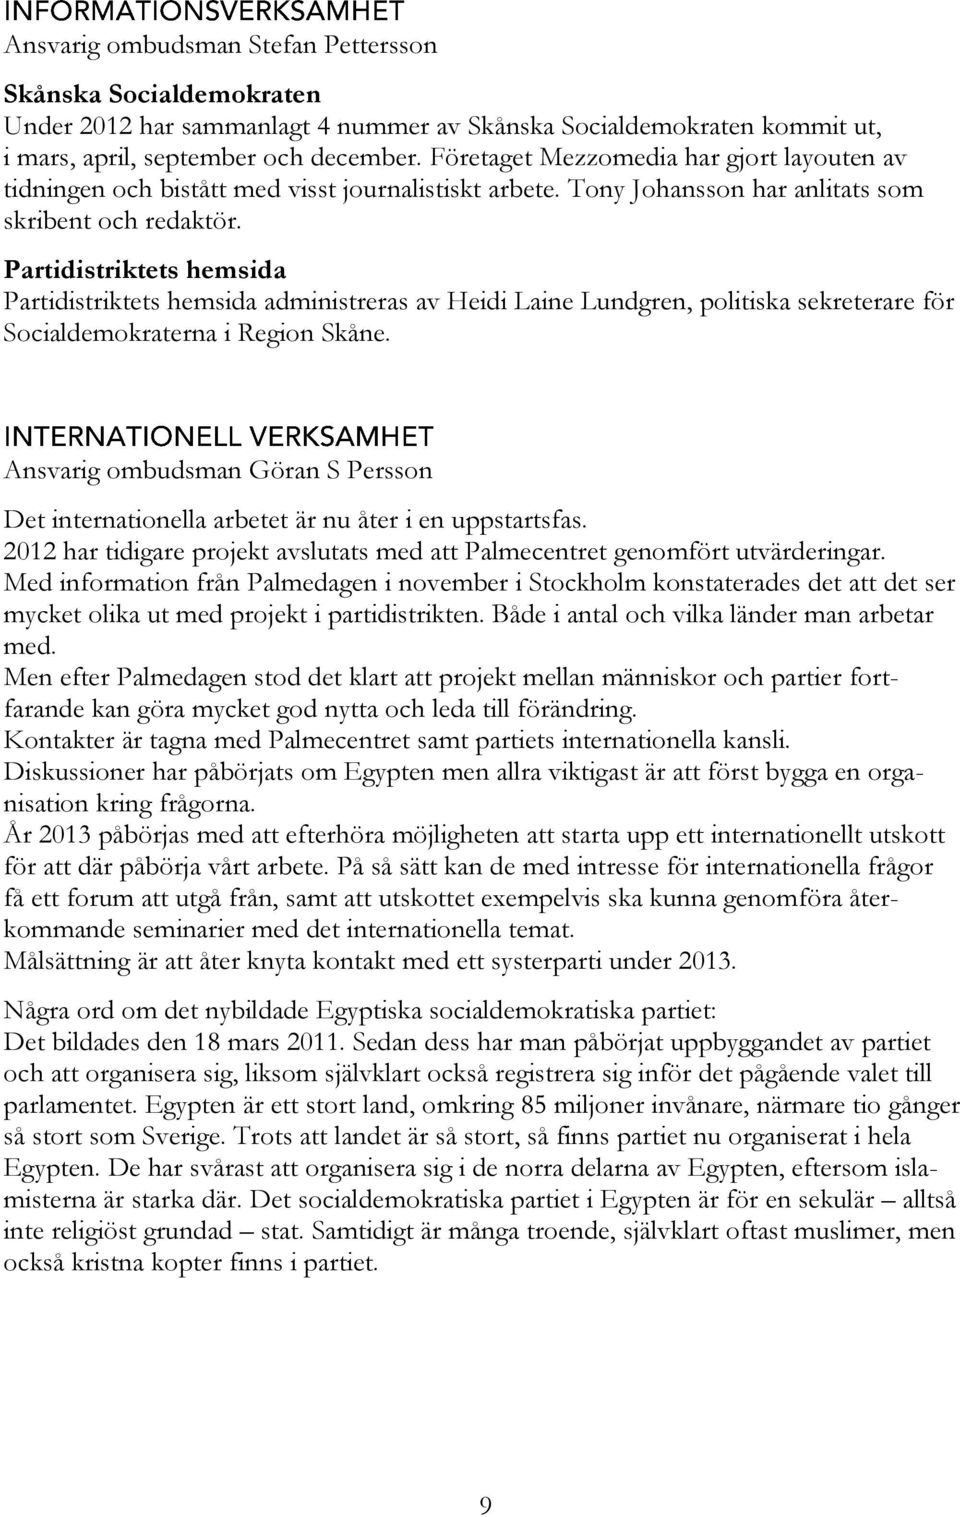 Partidistriktets hemsida Partidistriktets hemsida administreras av Heidi Laine Lundgren, politiska sekreterare för Socialdemokraterna i Region Skåne.